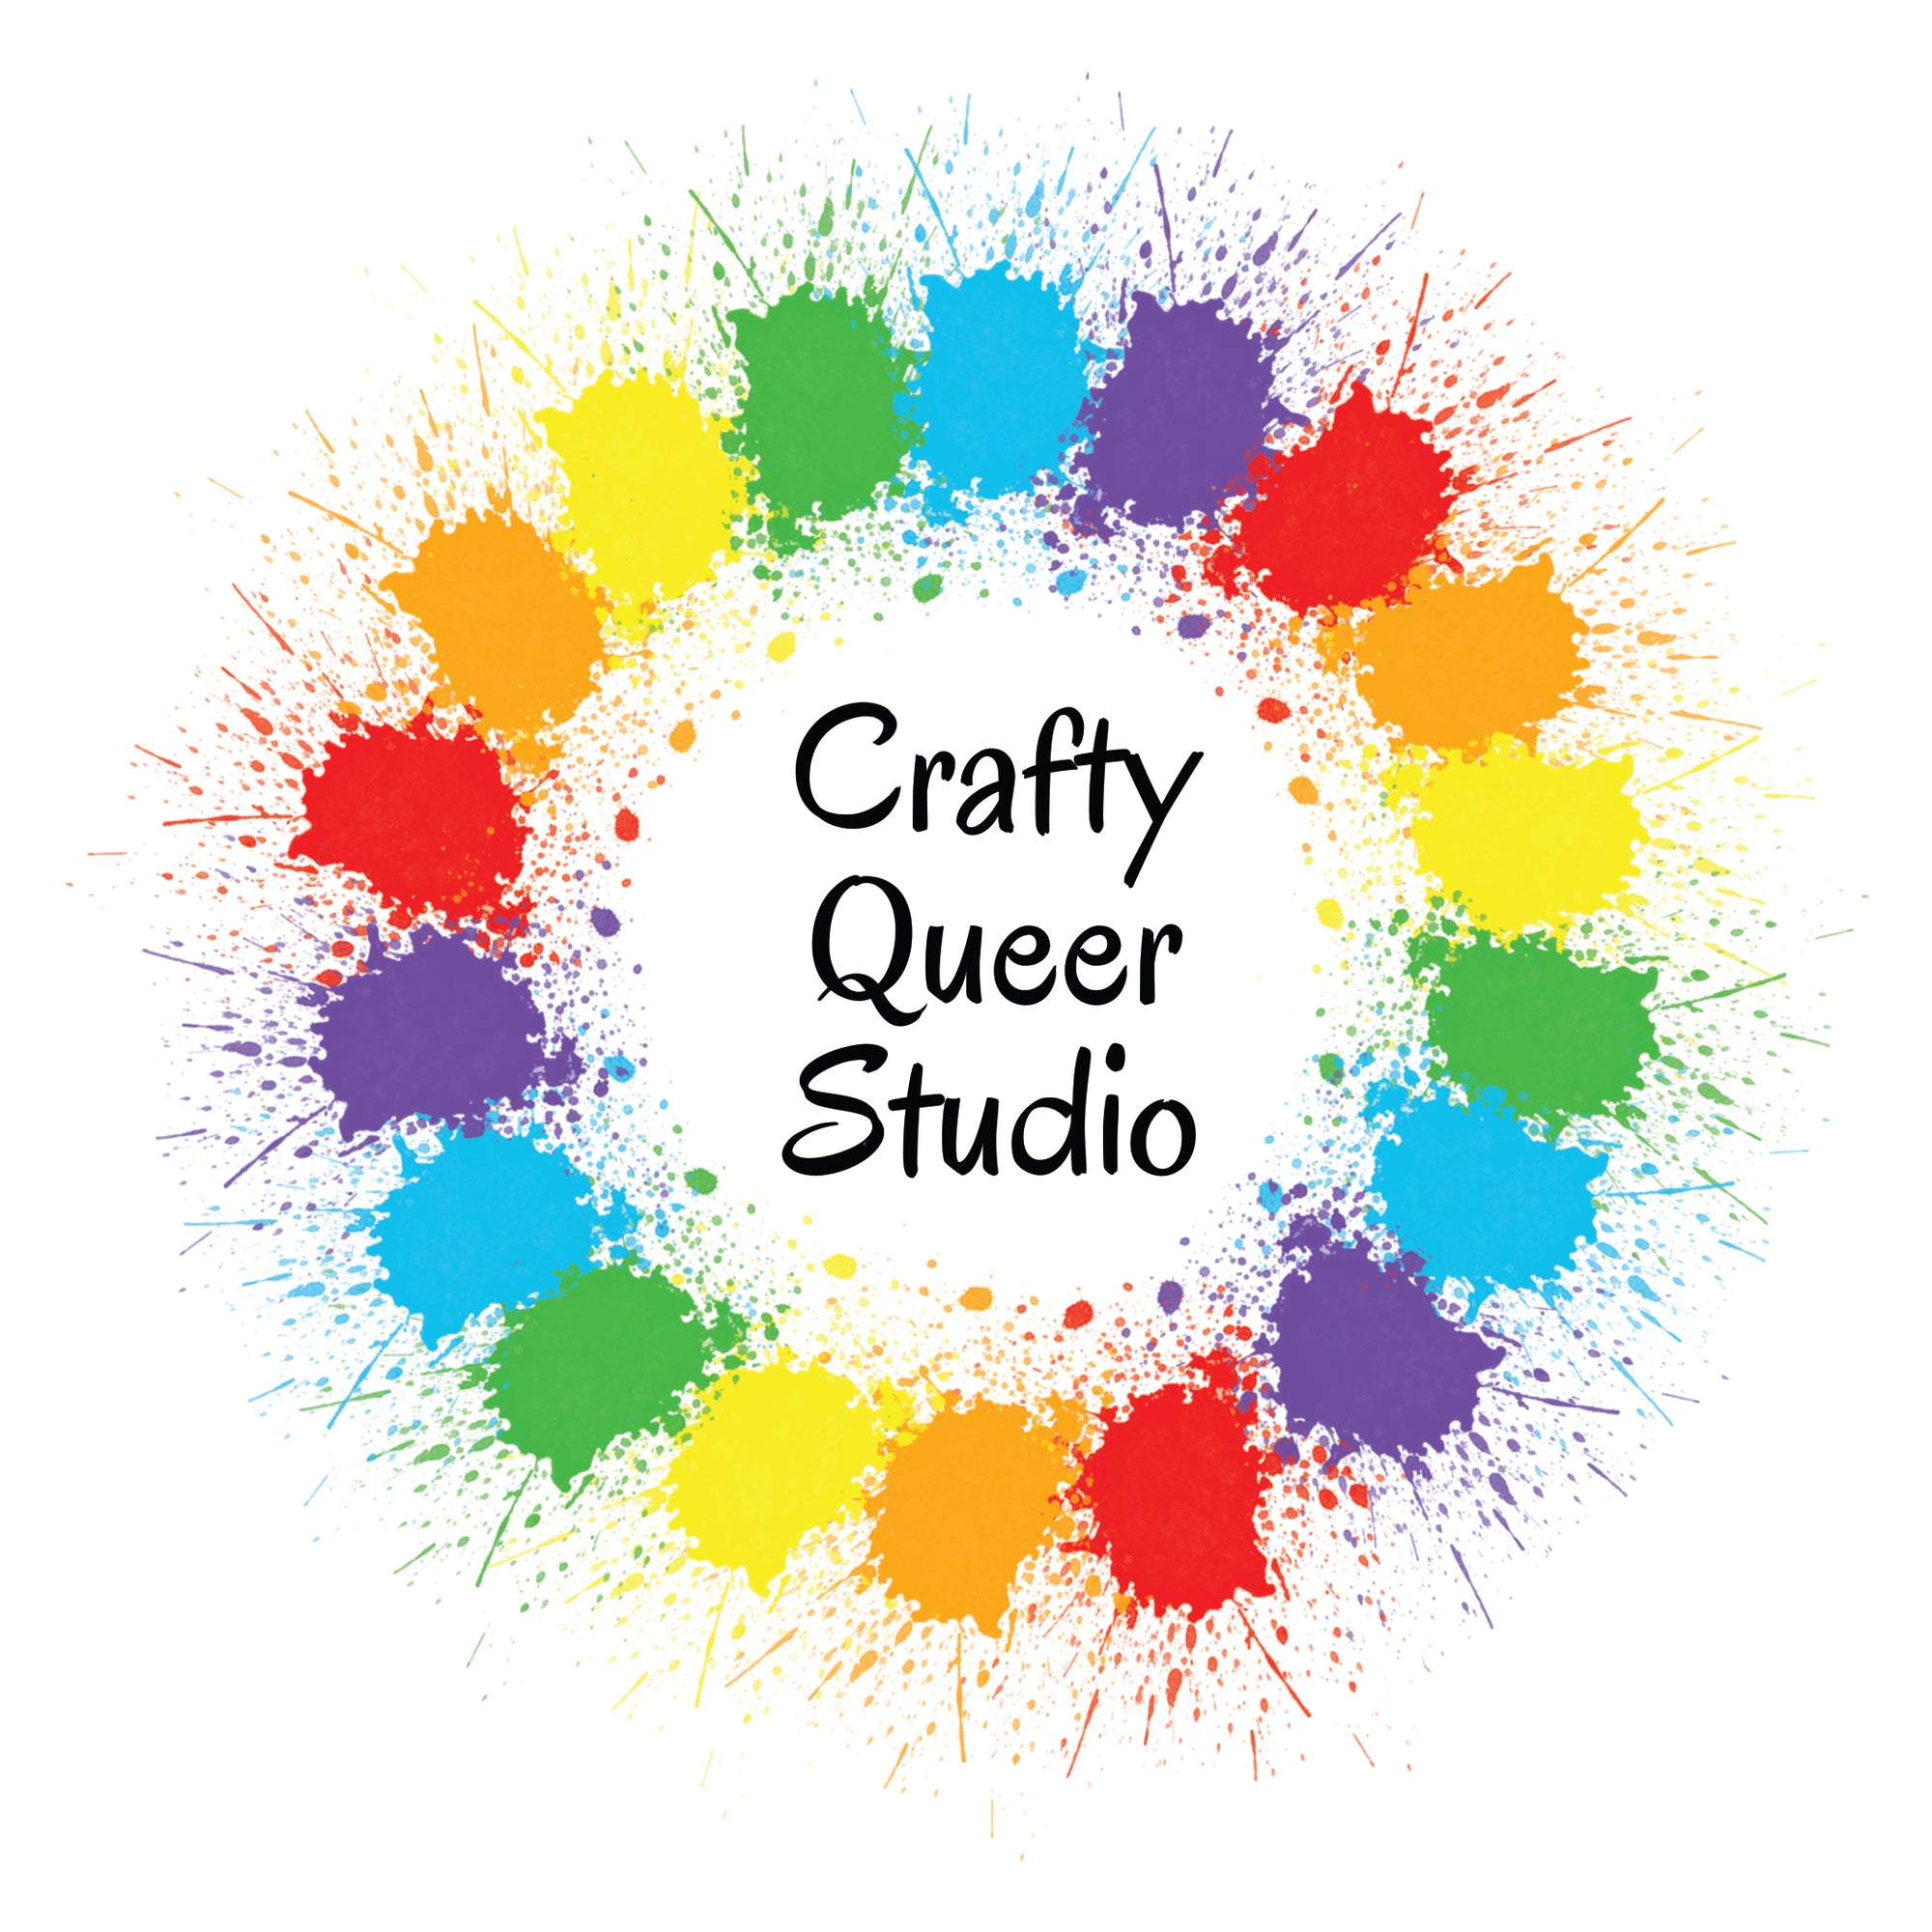 Crafty Queer Studio